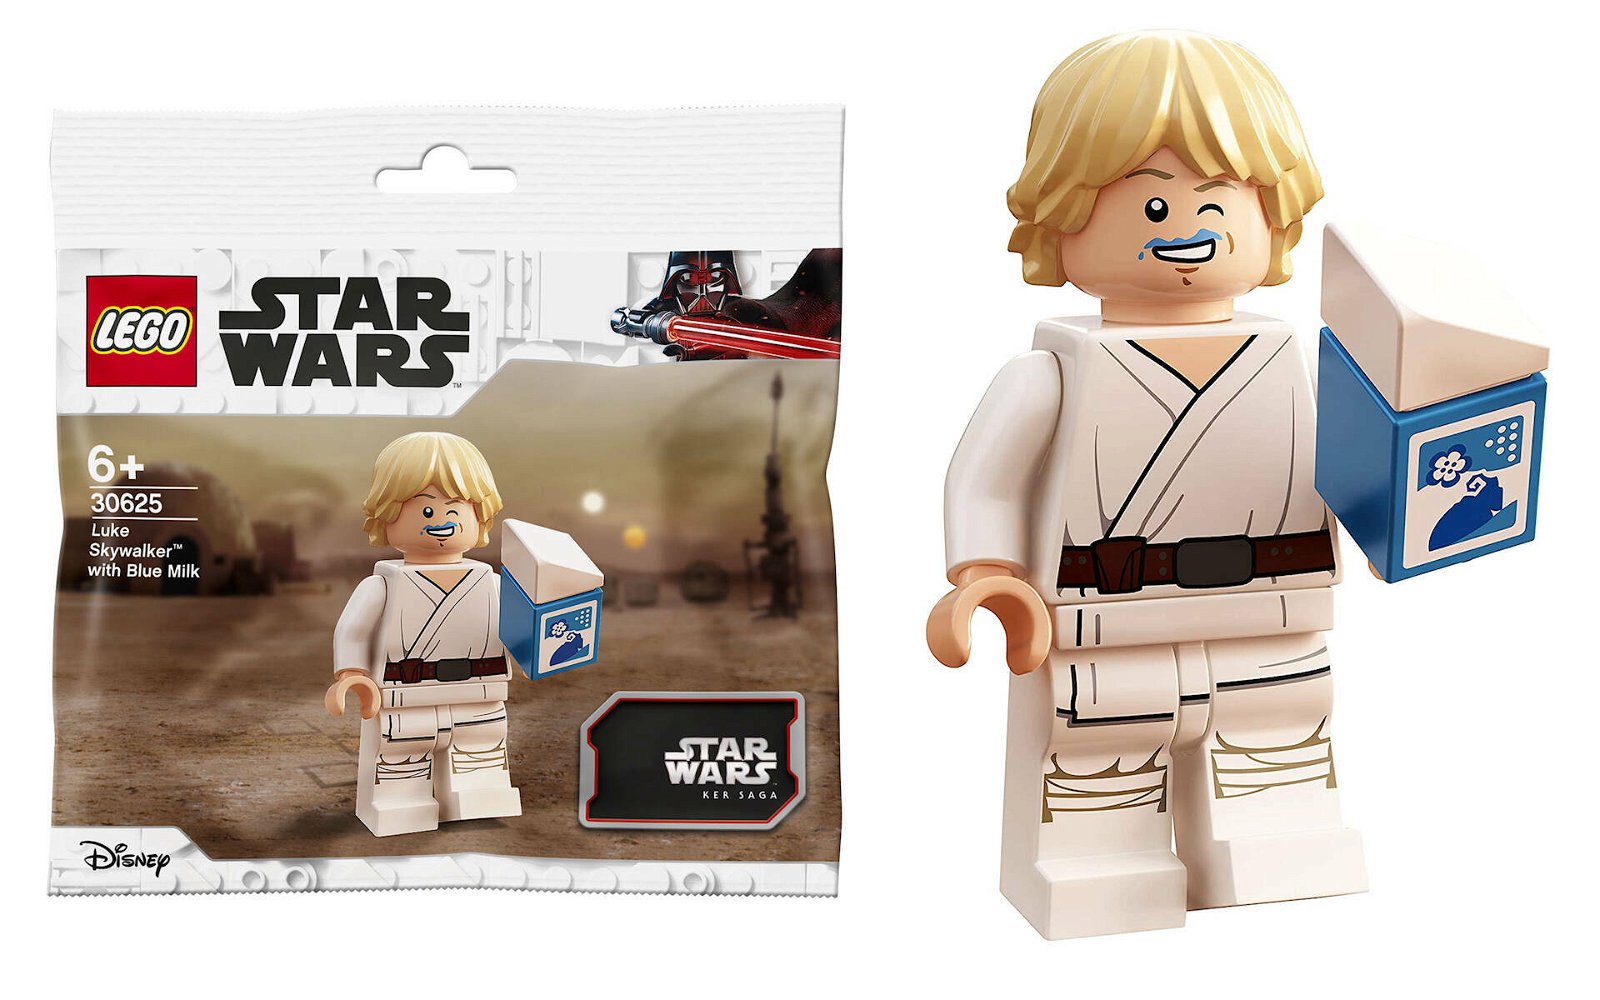 LEGO Star Wars, i bagarini lo comprano in massa per "colpa" di Luke